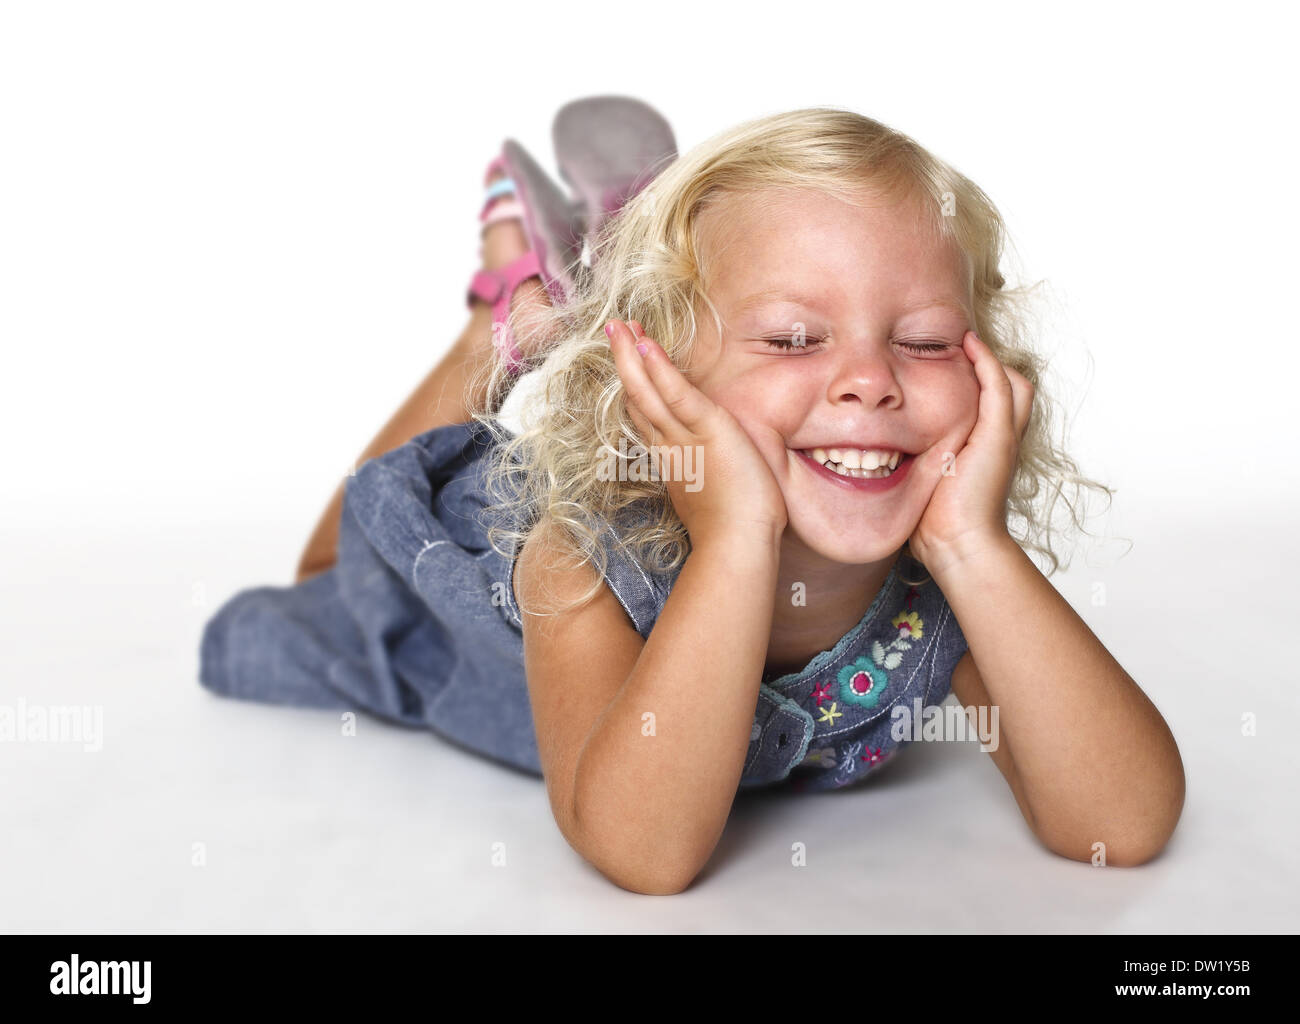 kid lay down on white Stock Photo